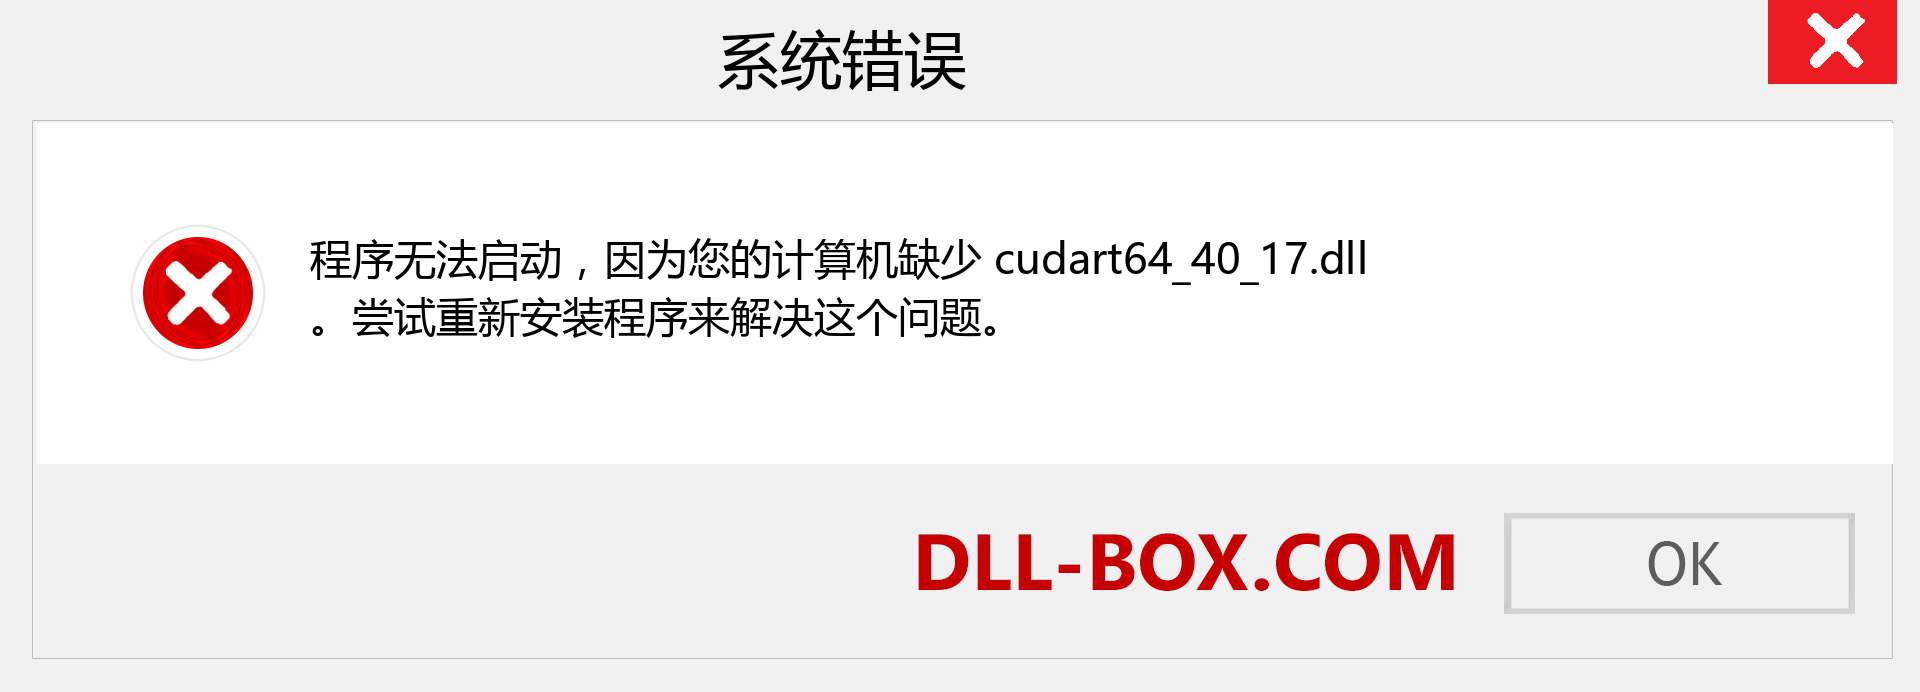 cudart64_40_17.dll 文件丢失？。 适用于 Windows 7、8、10 的下载 - 修复 Windows、照片、图像上的 cudart64_40_17 dll 丢失错误